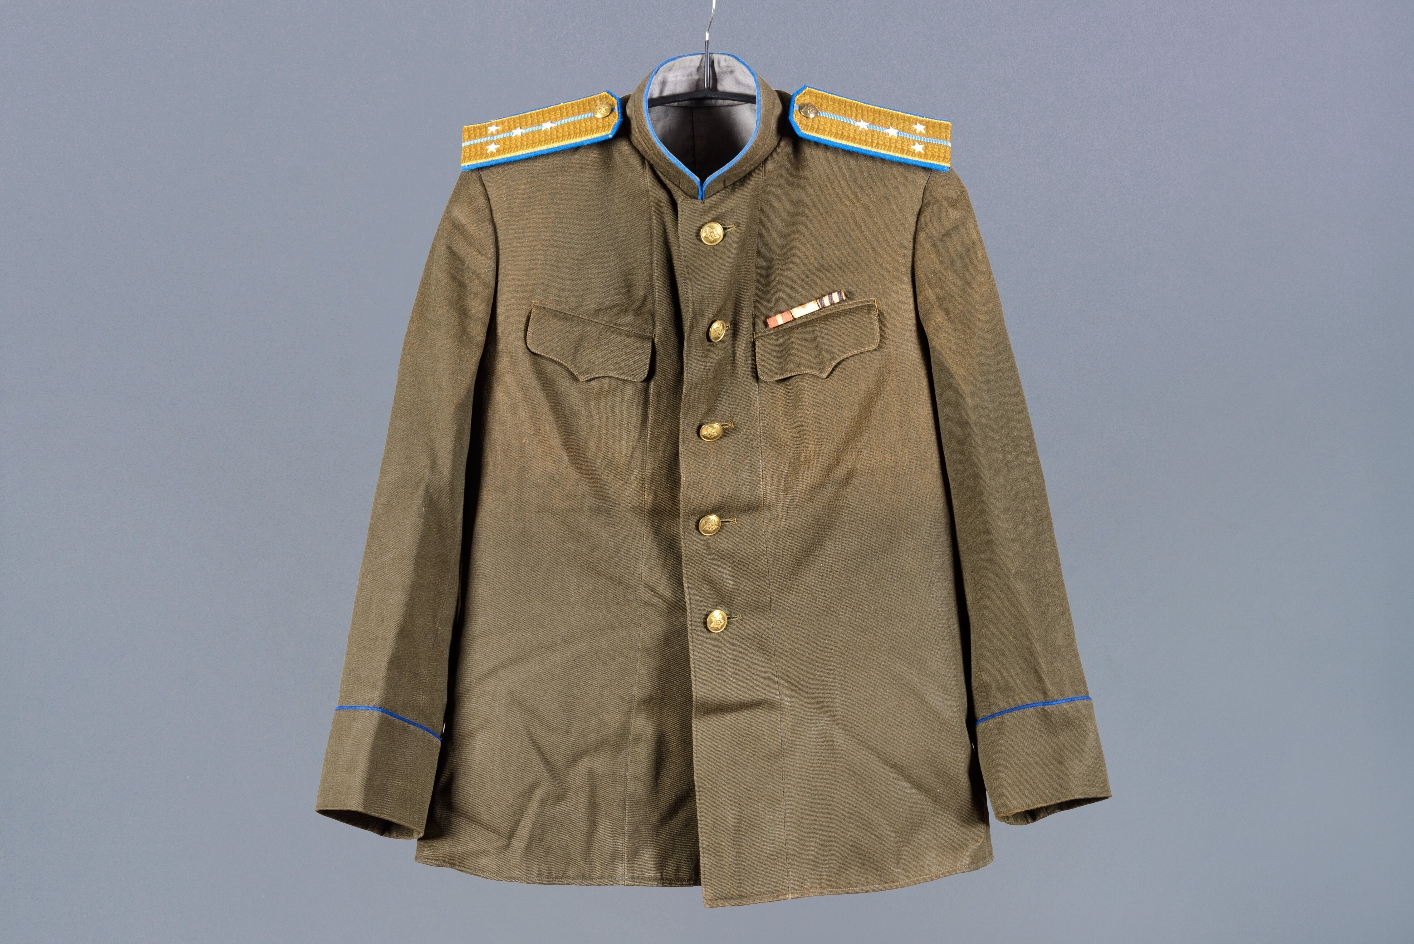 Foto einer olivgrünen Uniformjacke eines Mitarbeiters des NKWD im Range eines Hauptmannes. Auf beiden Schultern sind blaugelbe Epauletten angebracht. Die Uniform hat goldene Knöpfe.